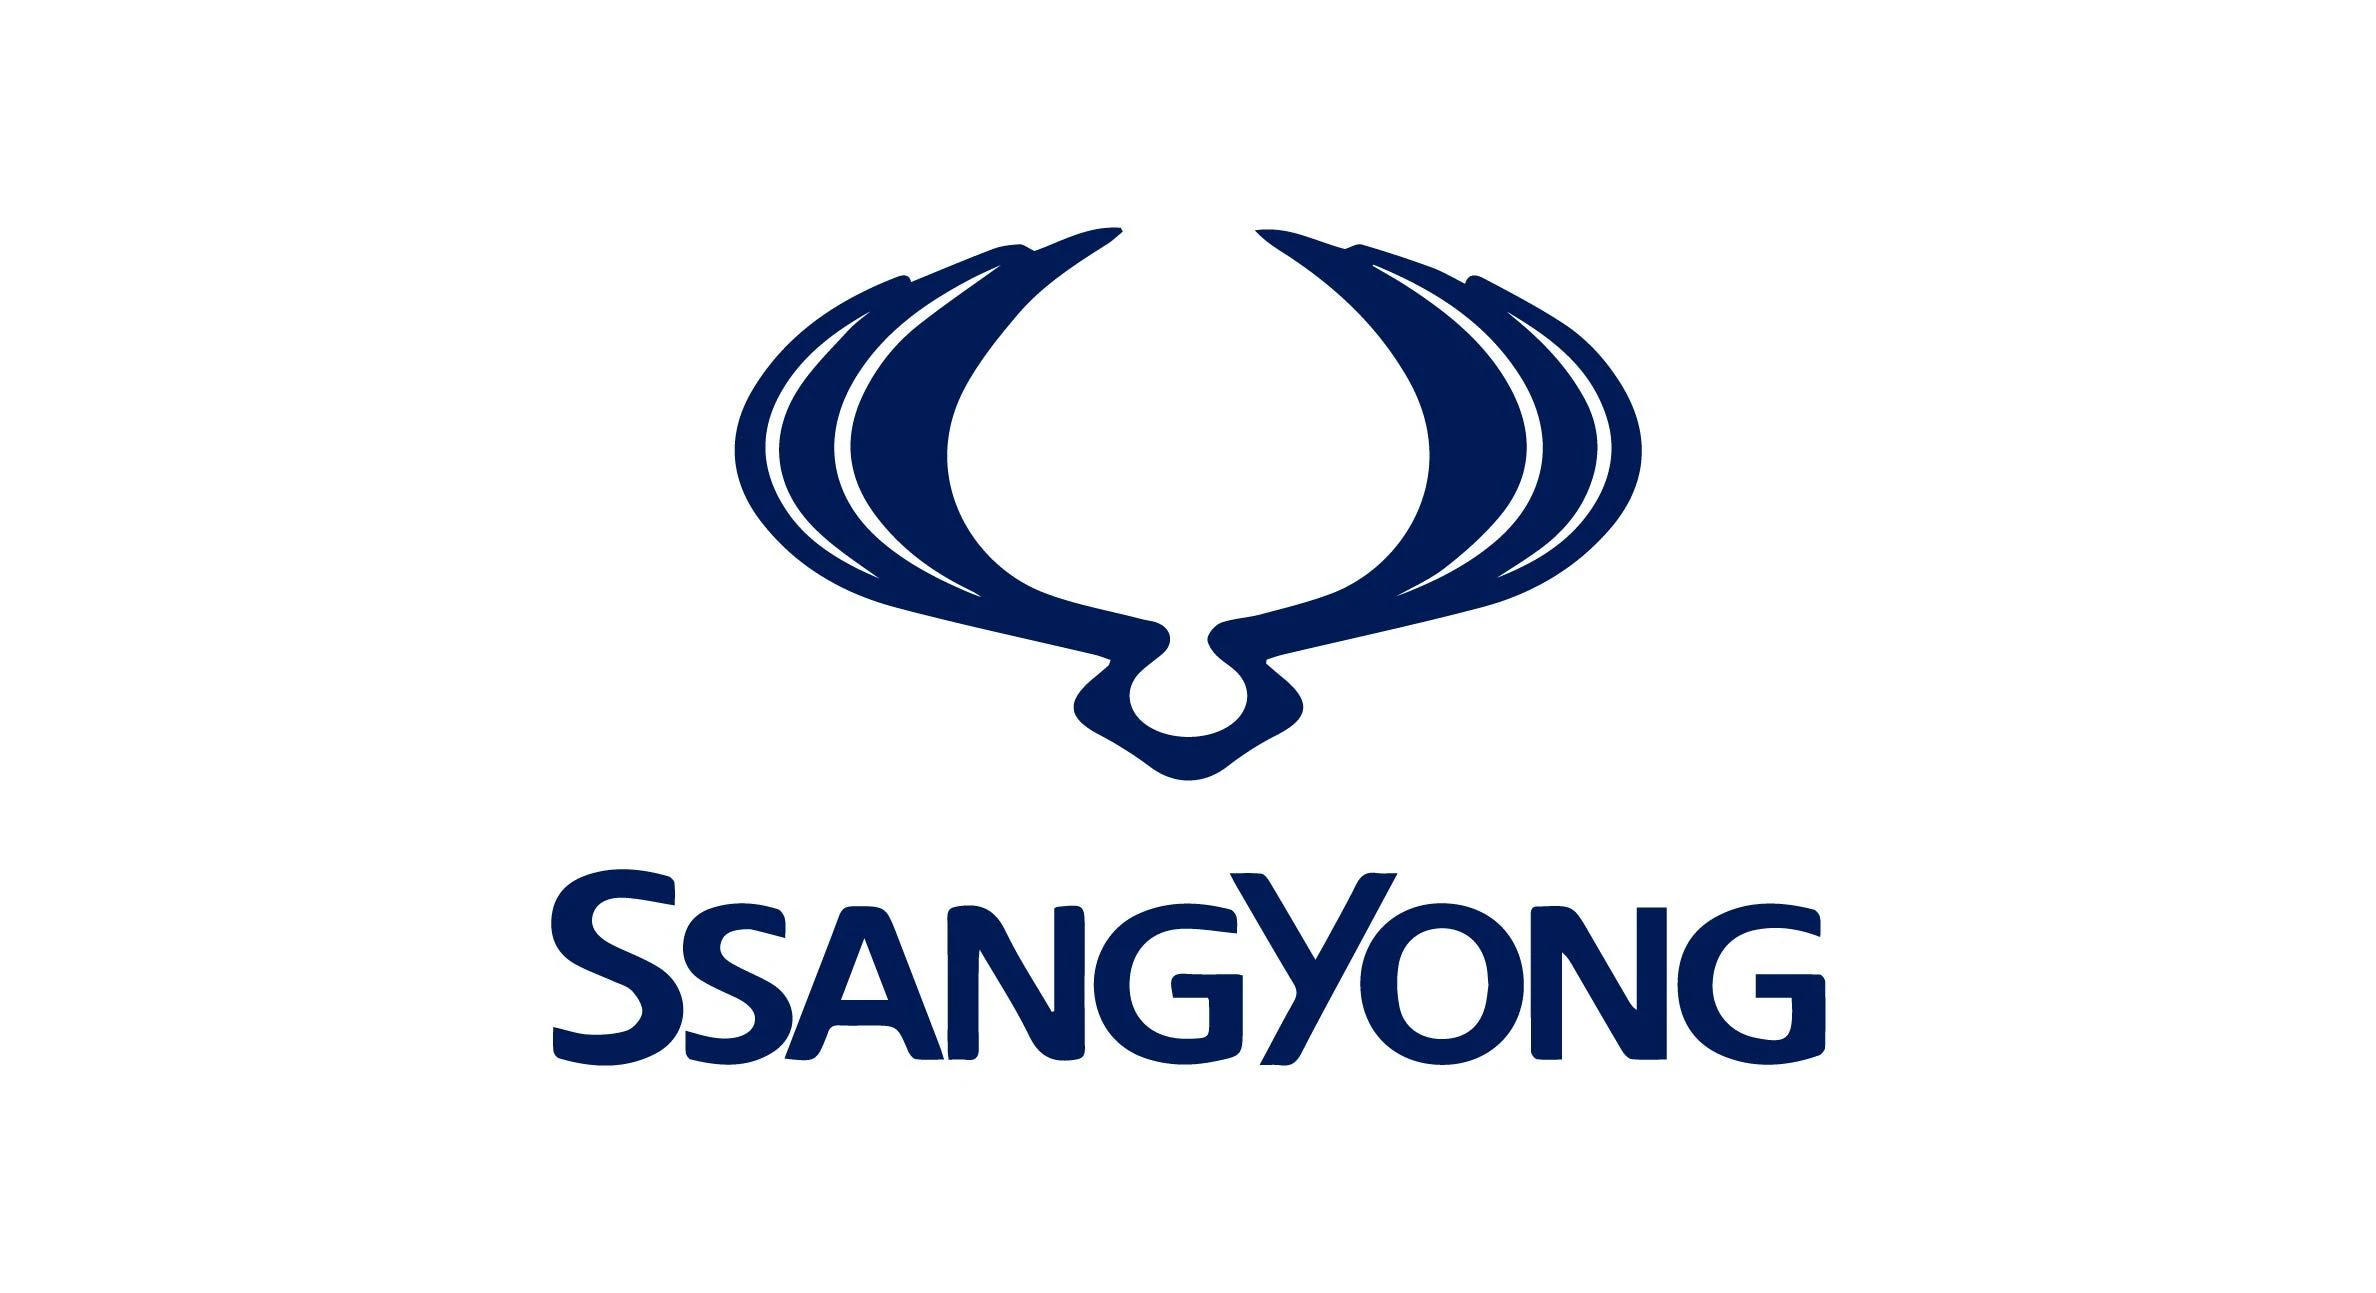 Ssangyong car brand logo